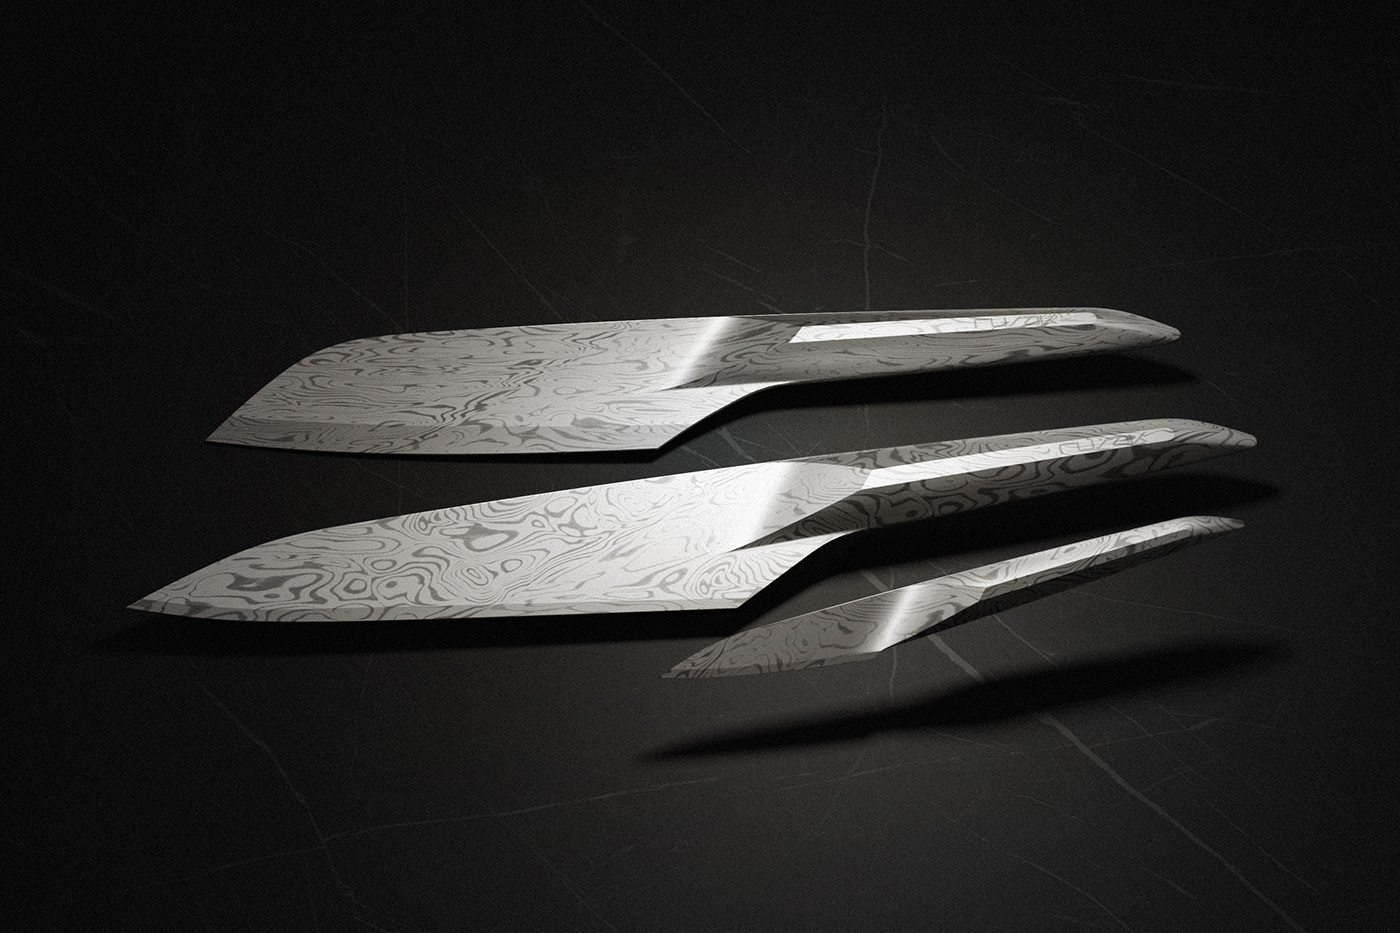 prospective lab 刀具,手柄和刀刃的部分一体成型.形成绝对的美感.